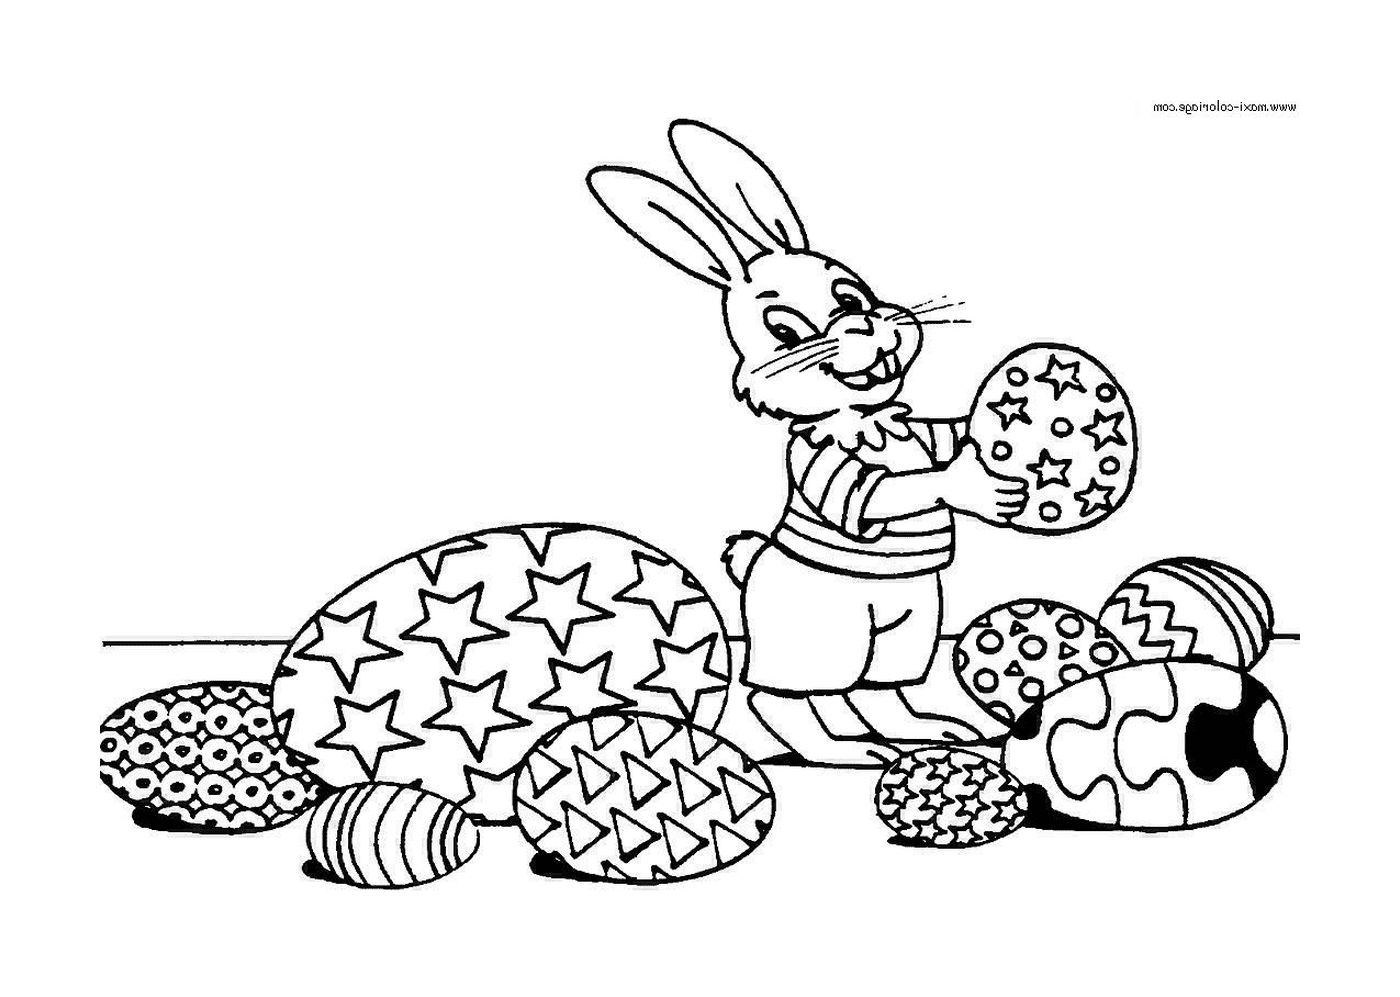  Un conejo sosteniendo una galleta en su mano 